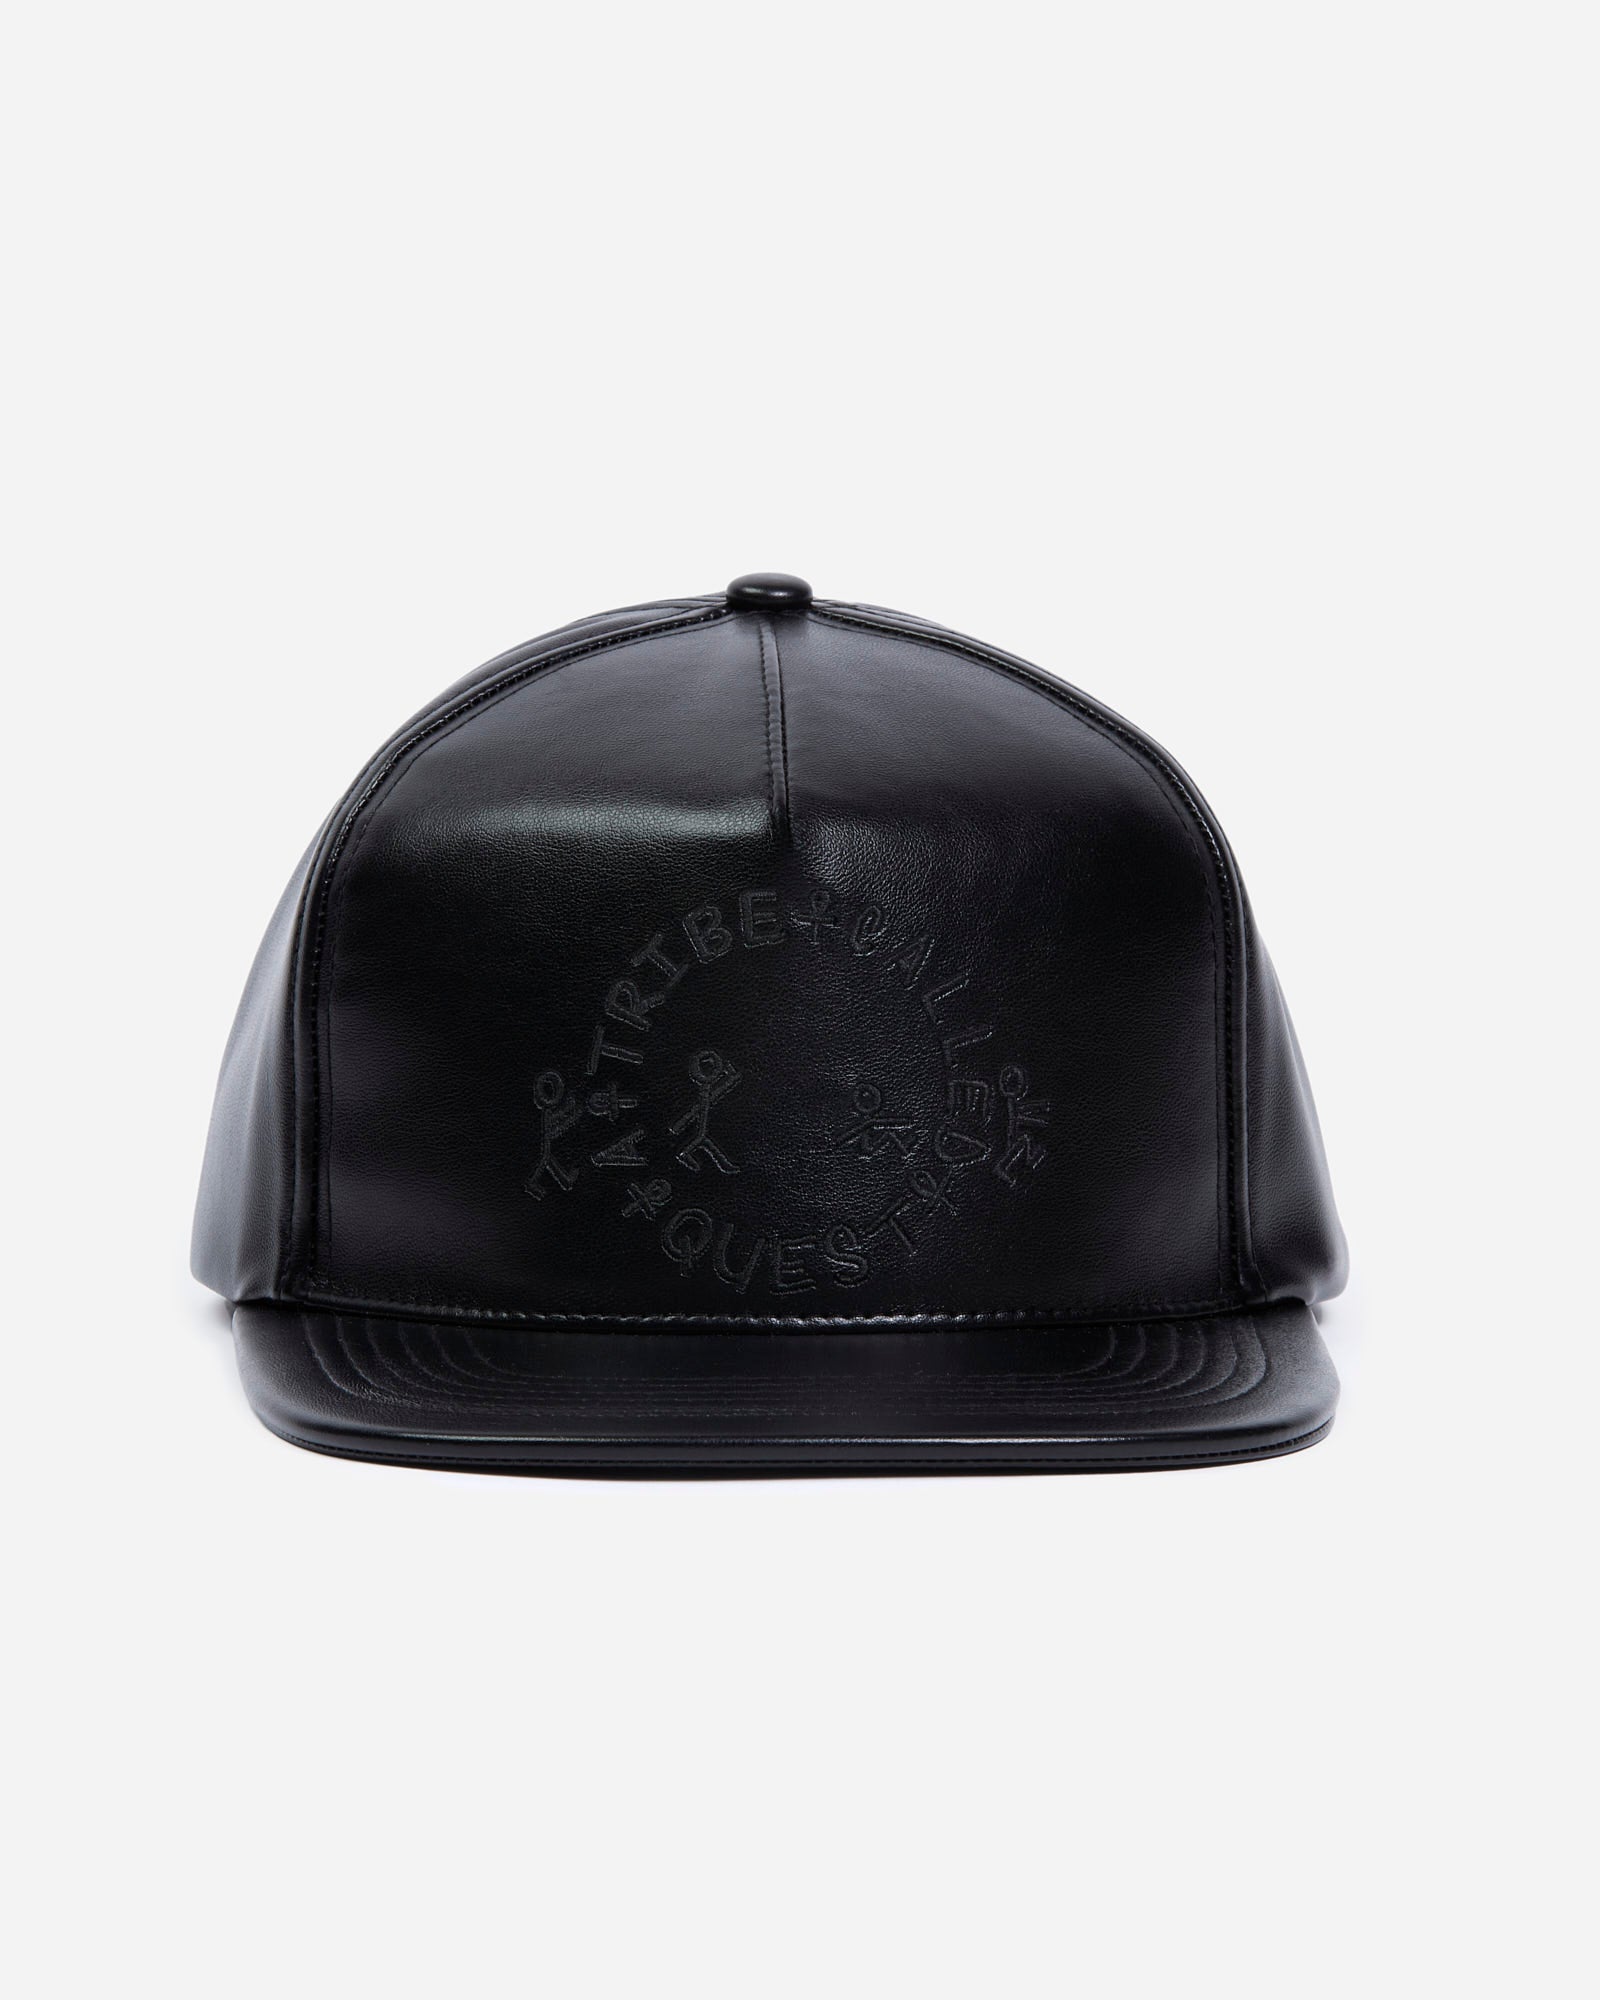 ATCQ Faux Leather Black Hat